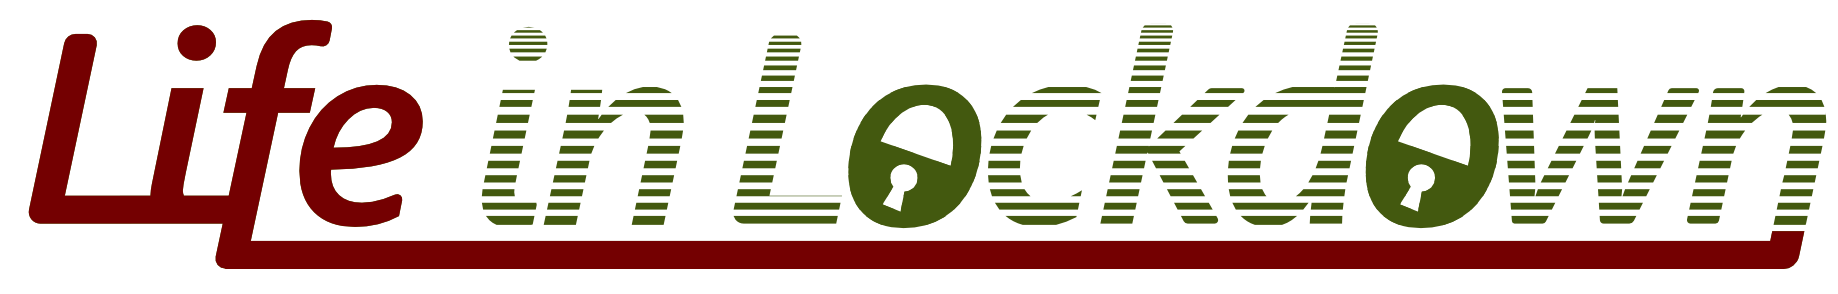 tgs life in lockdown logo